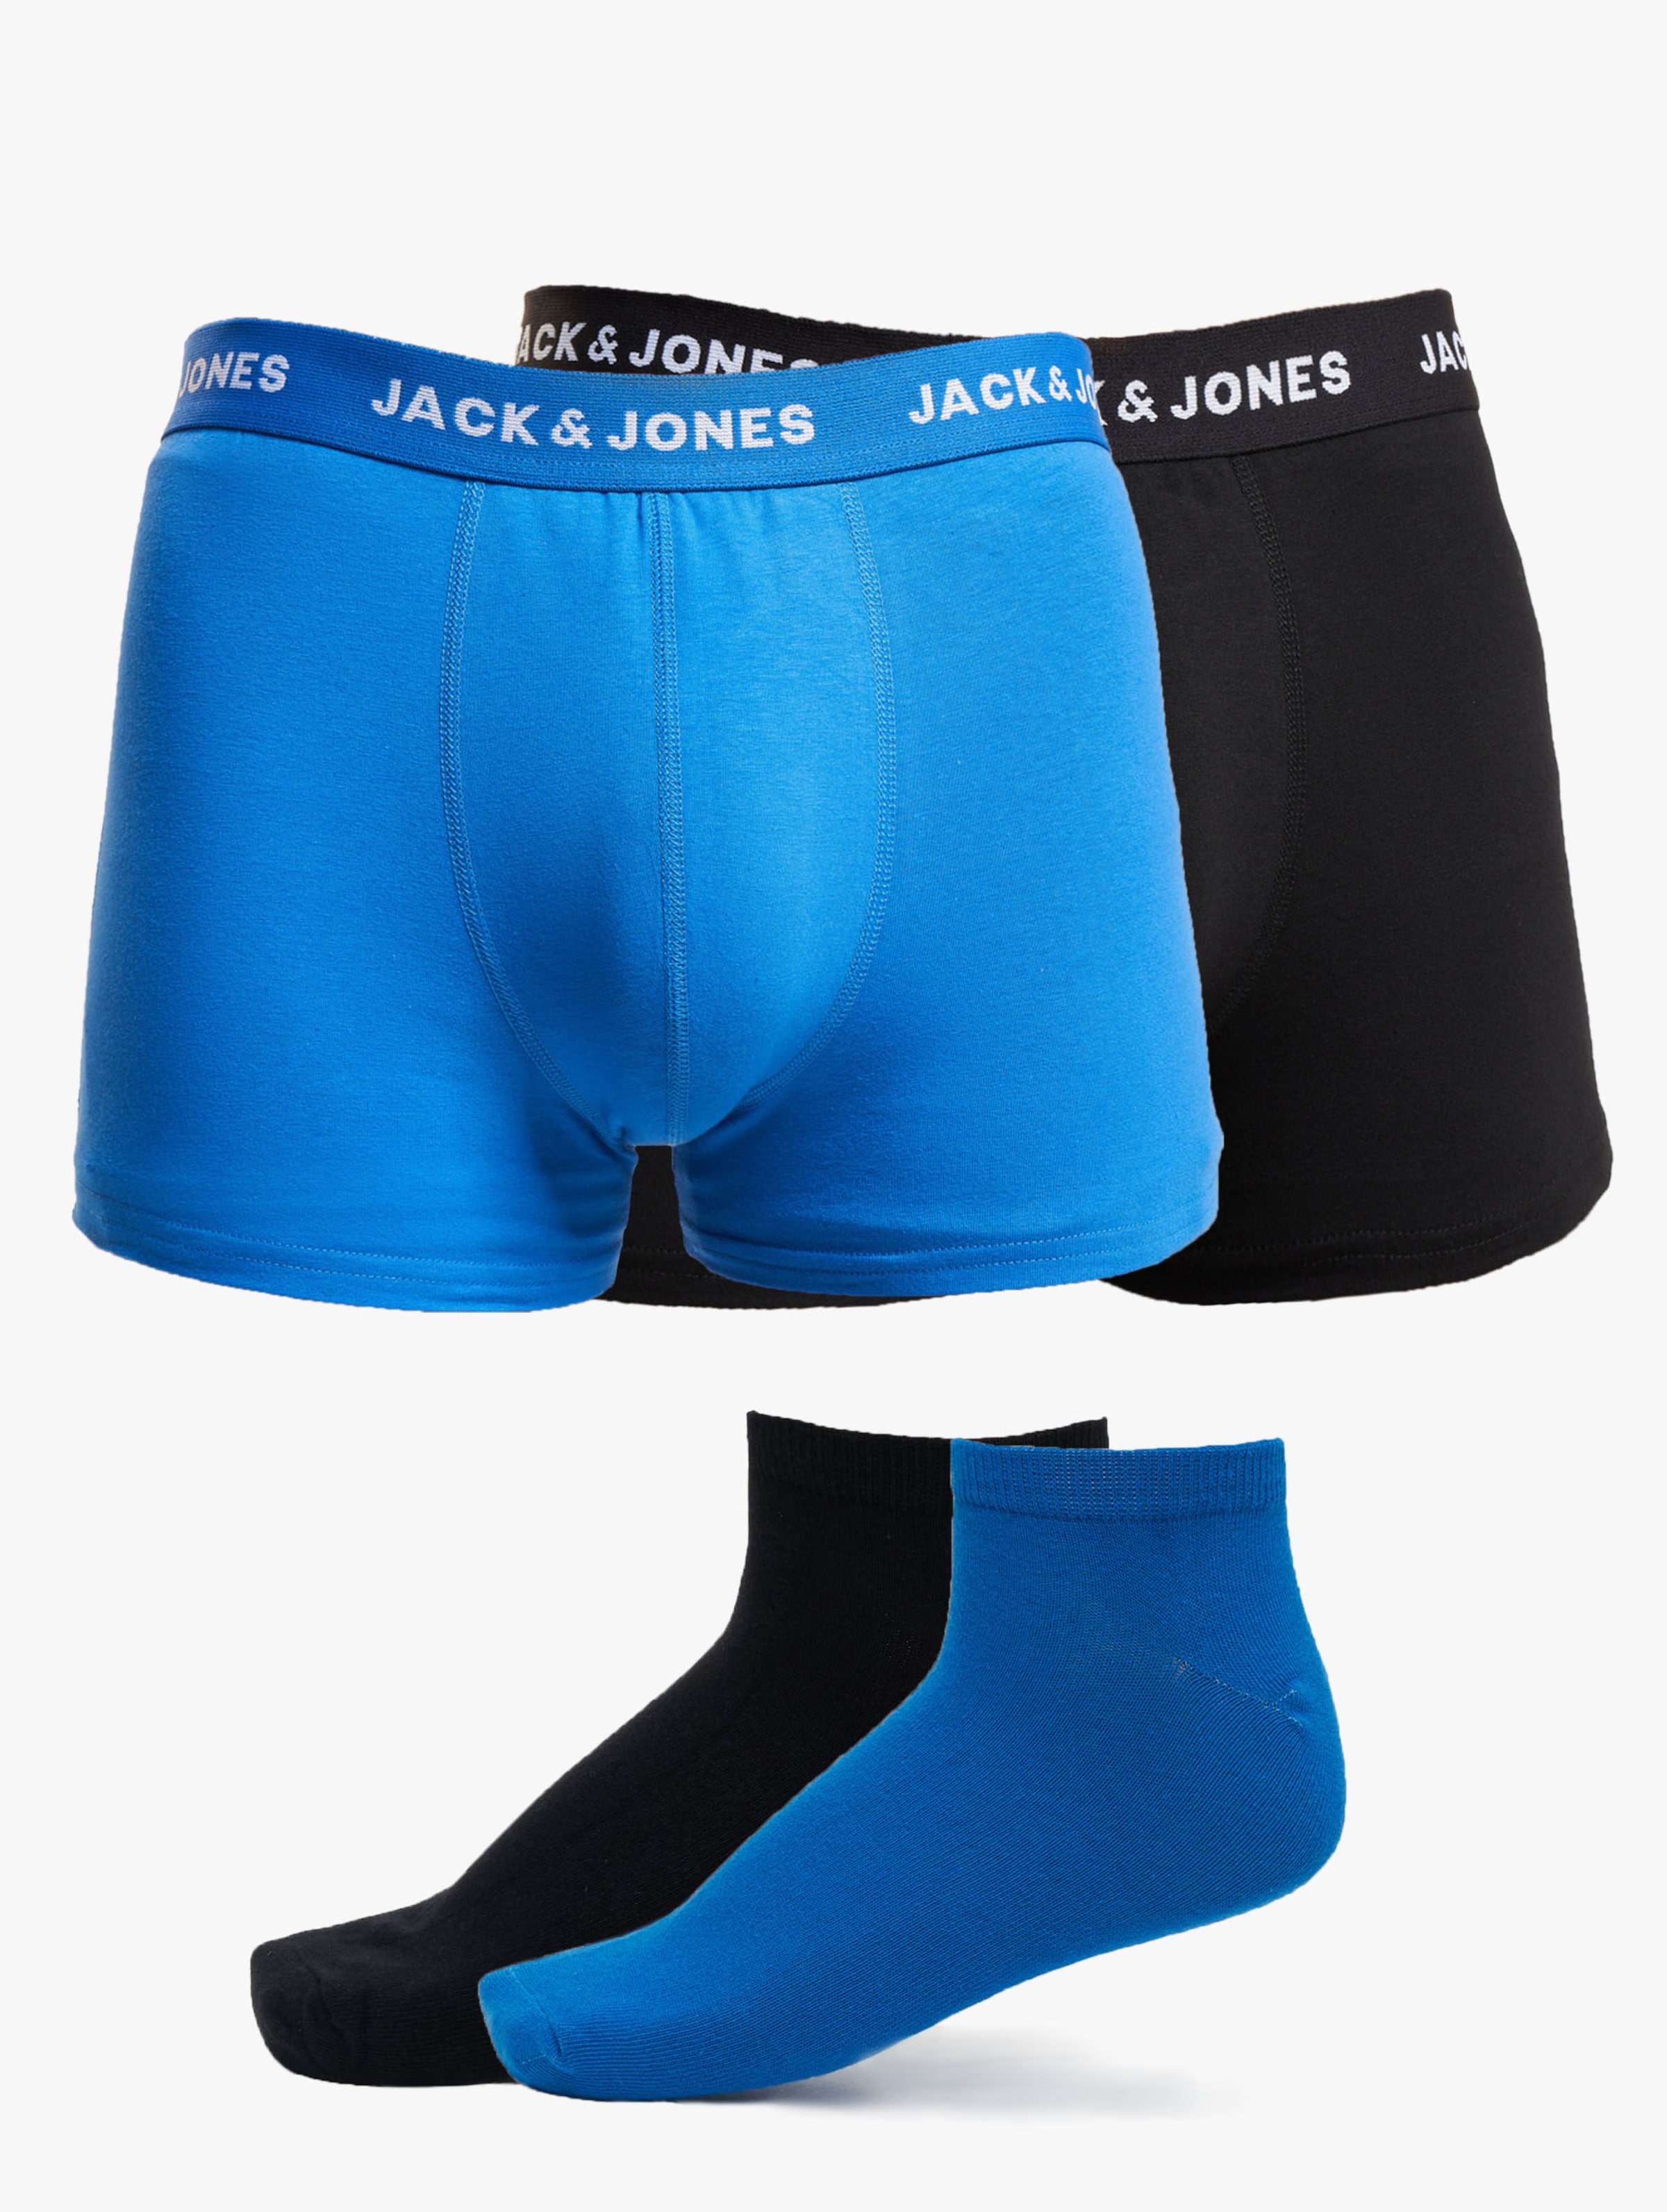 JACK & JONES Jacdavid solid weekendset (2+2-pack) - heren boxers en enkelsokken - kobalt blauw en zwart - Maat: L